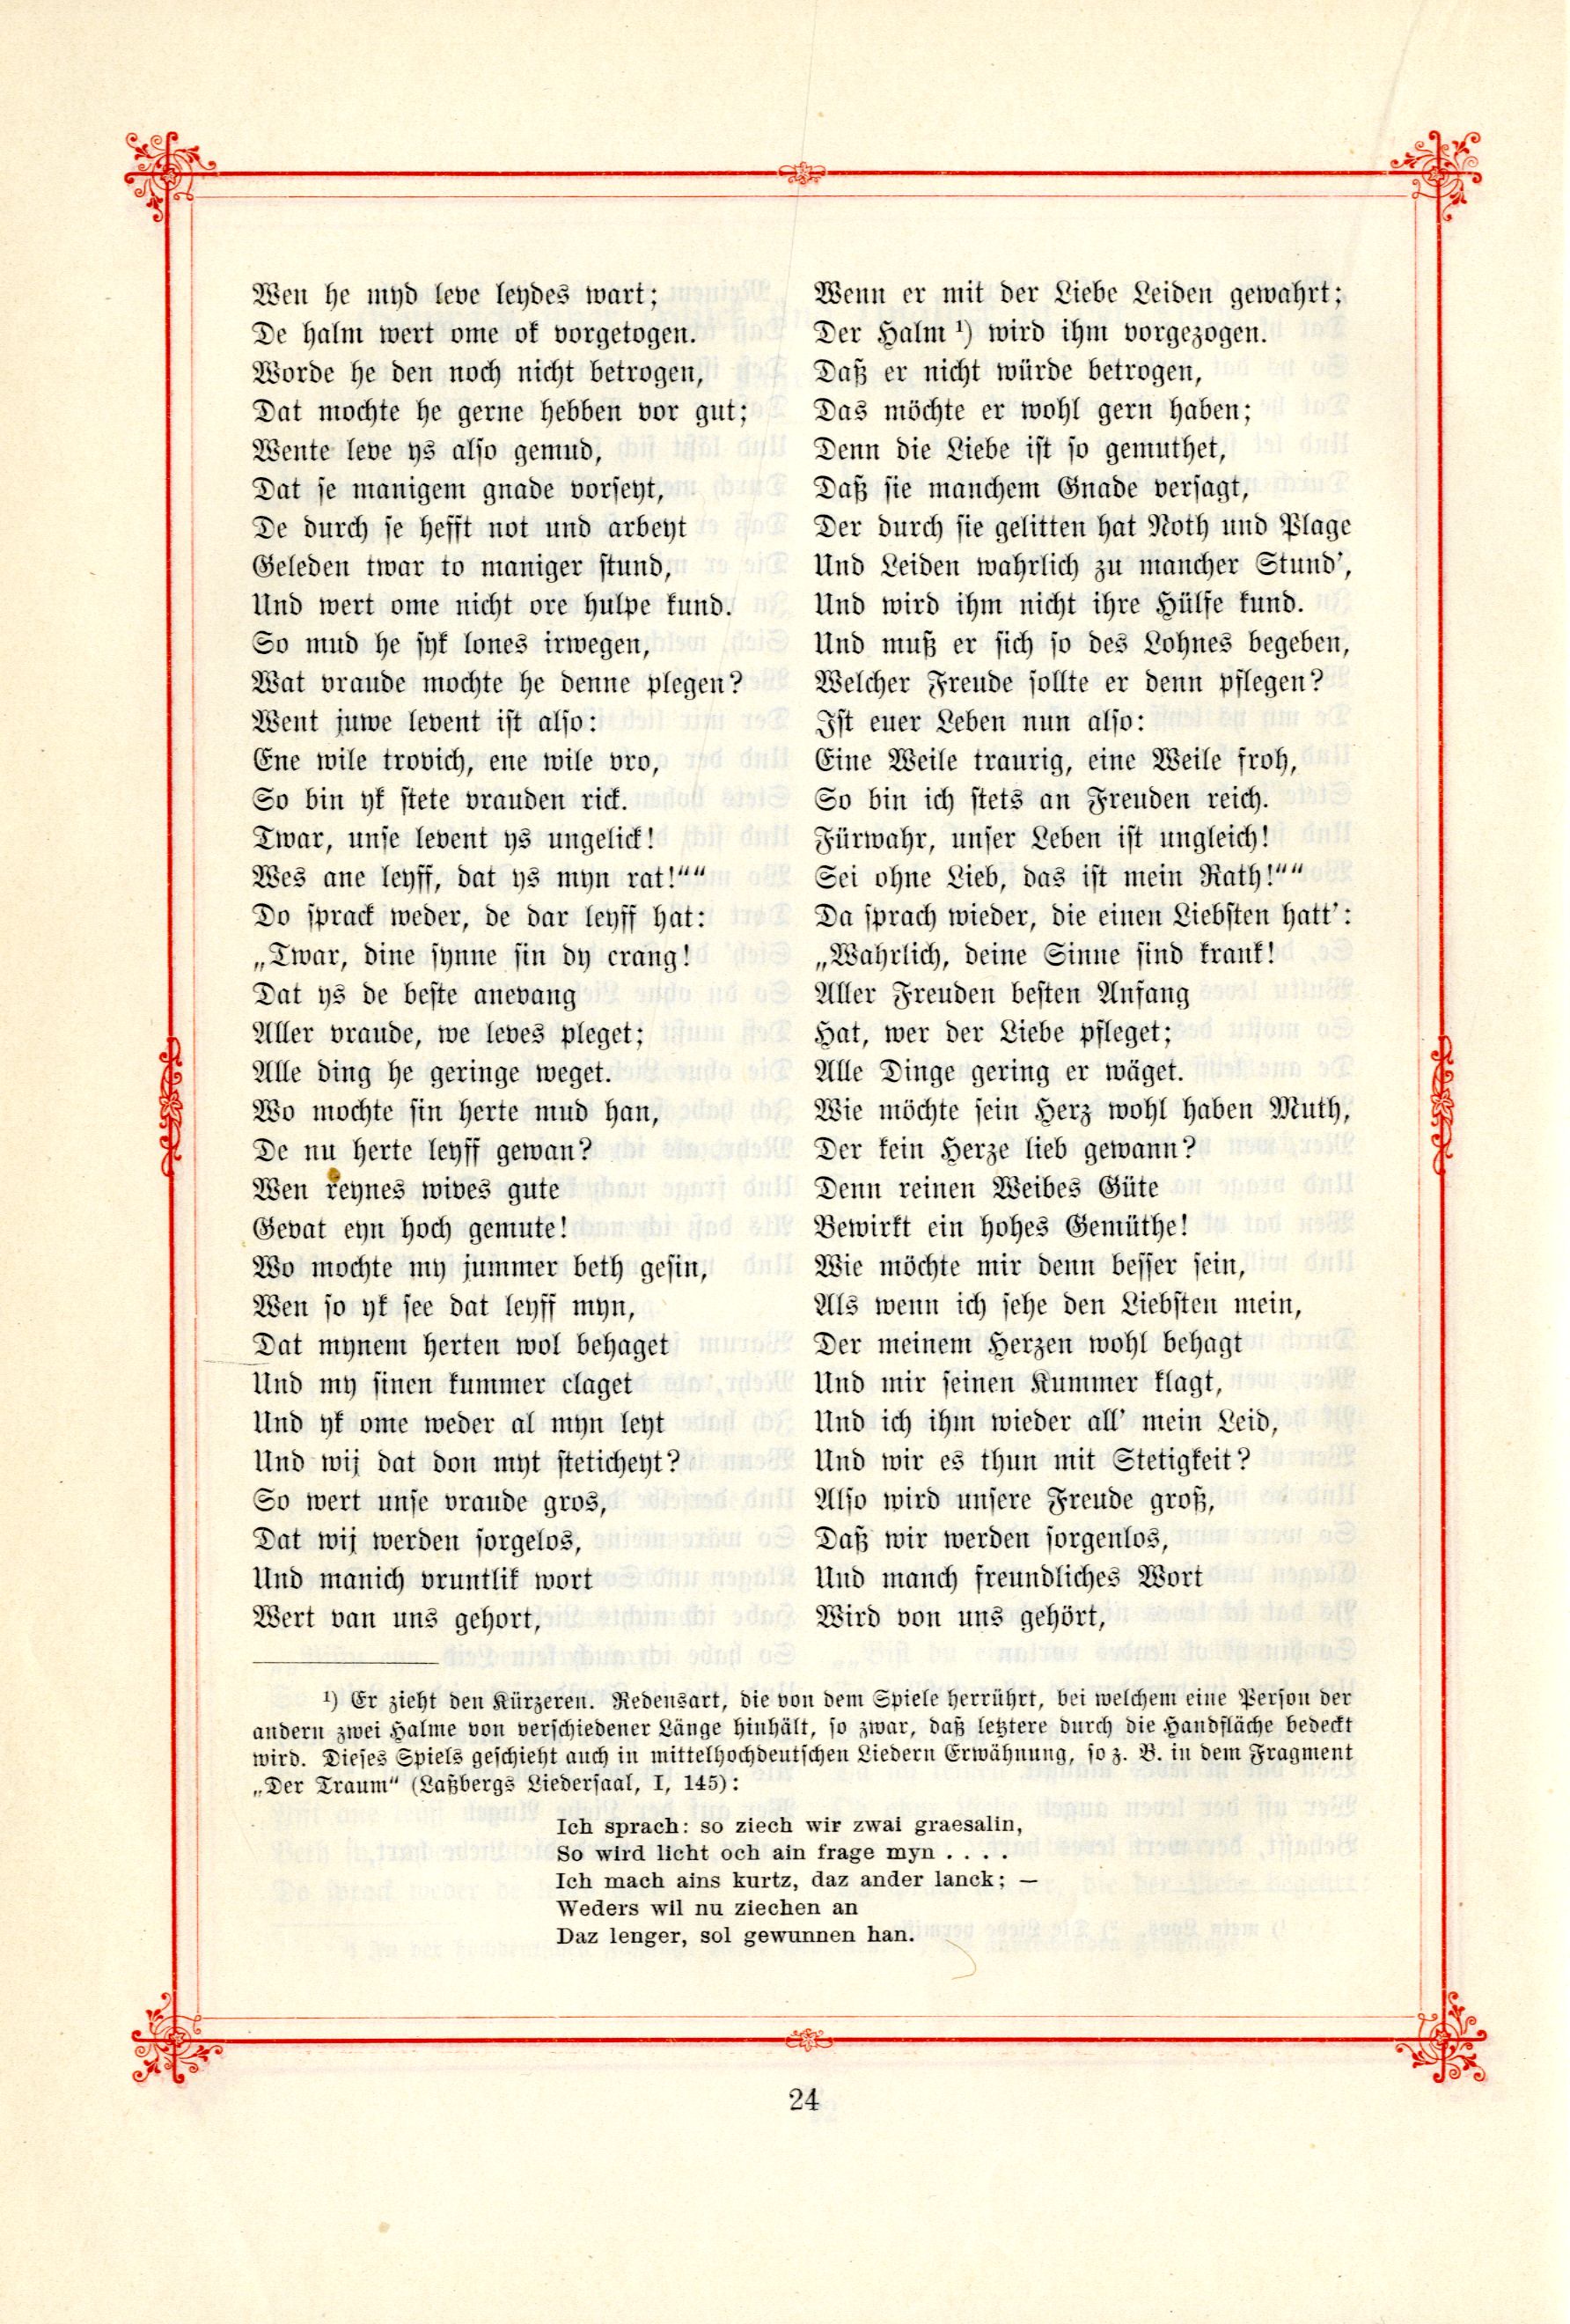 Das Baltische Dichterbuch (1895) | 70. (24) Main body of text